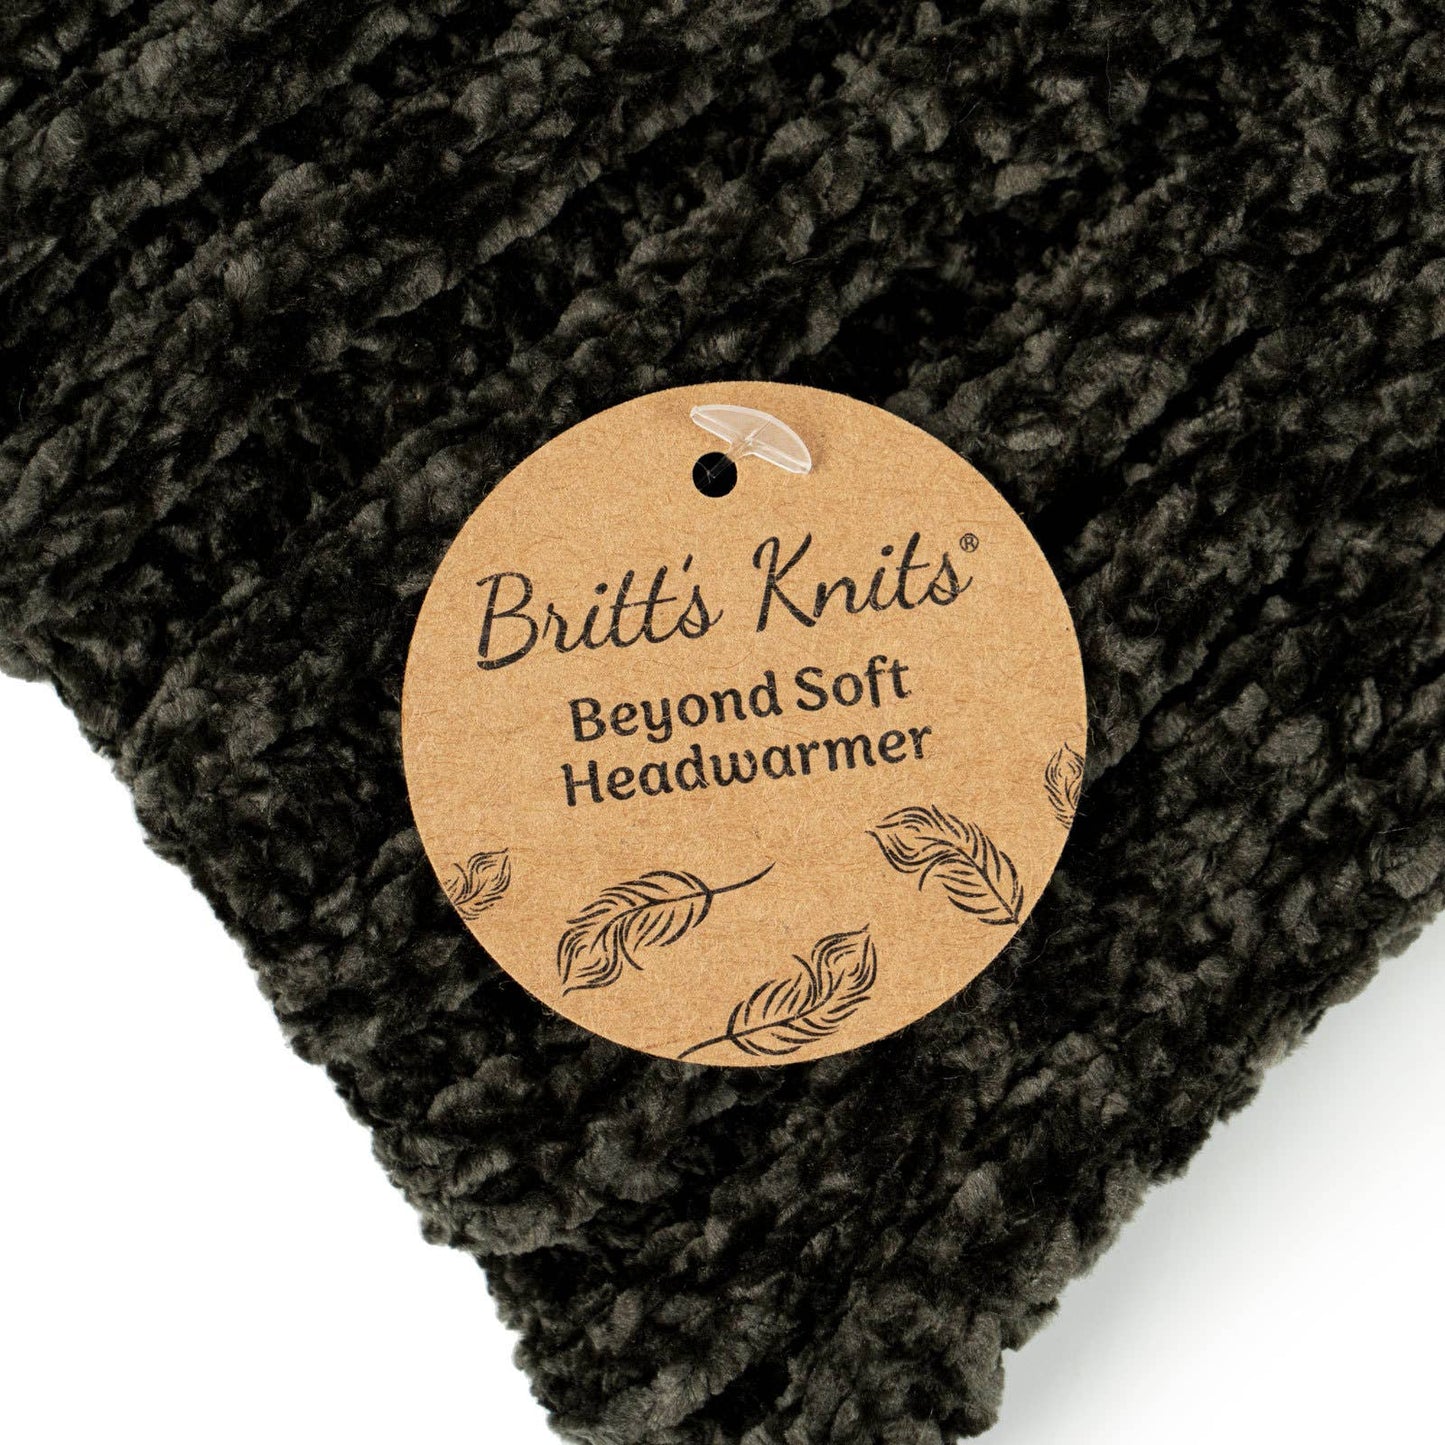 Britt's Knits Beyond Soft Headwarmer Open Stock